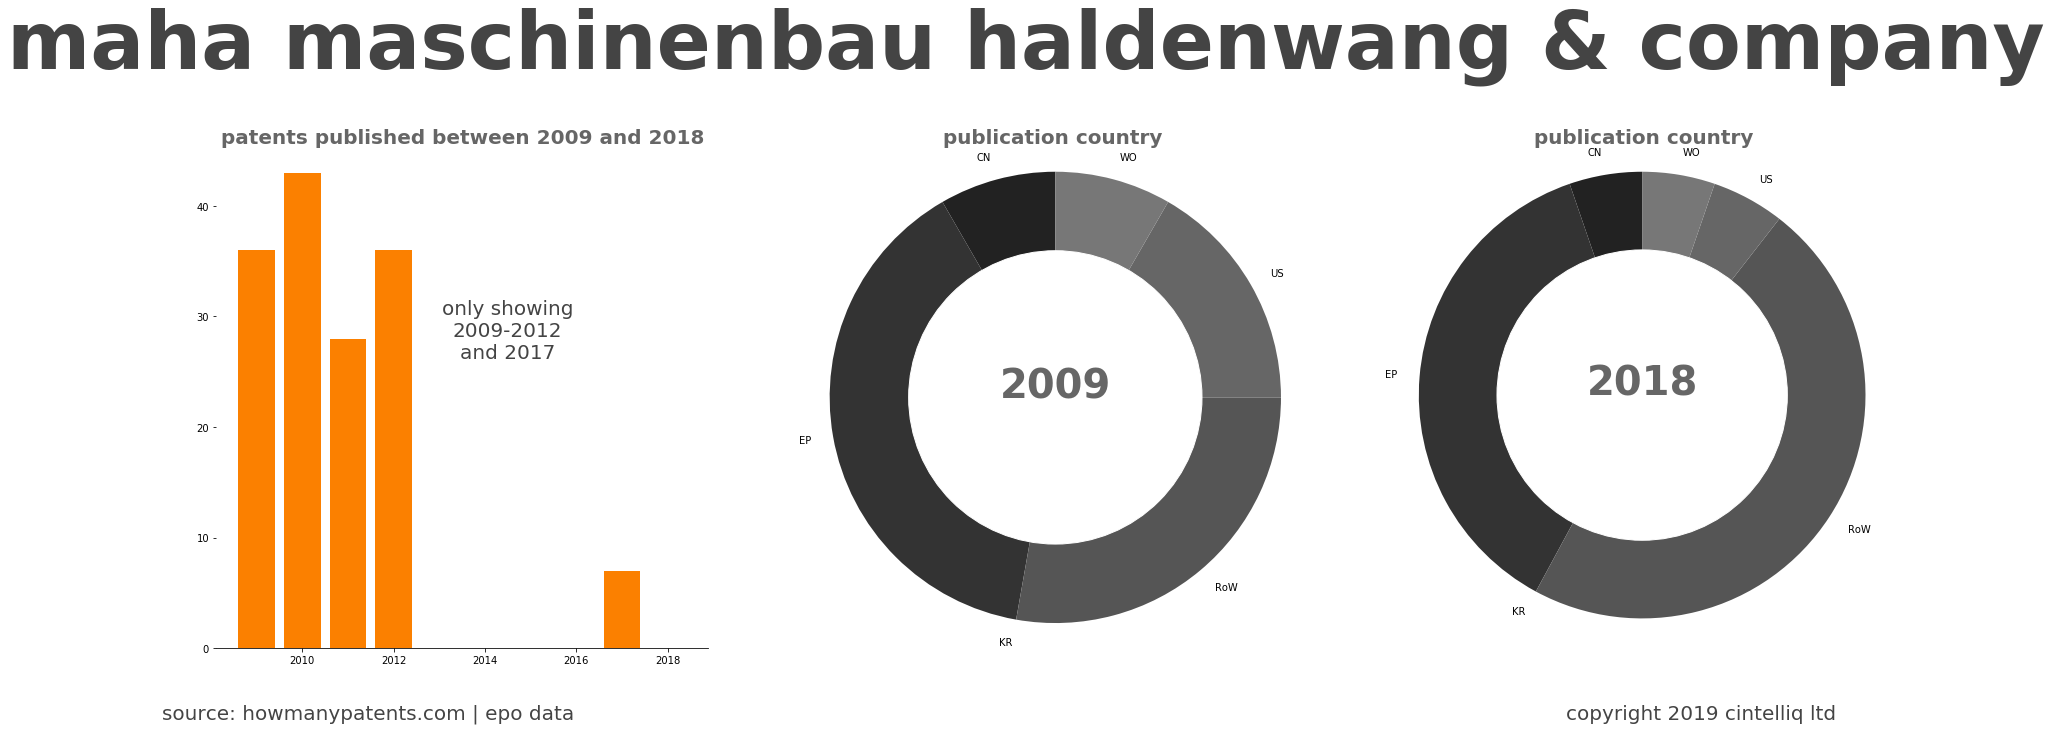 summary of patents for Maha Maschinenbau Haldenwang & Company